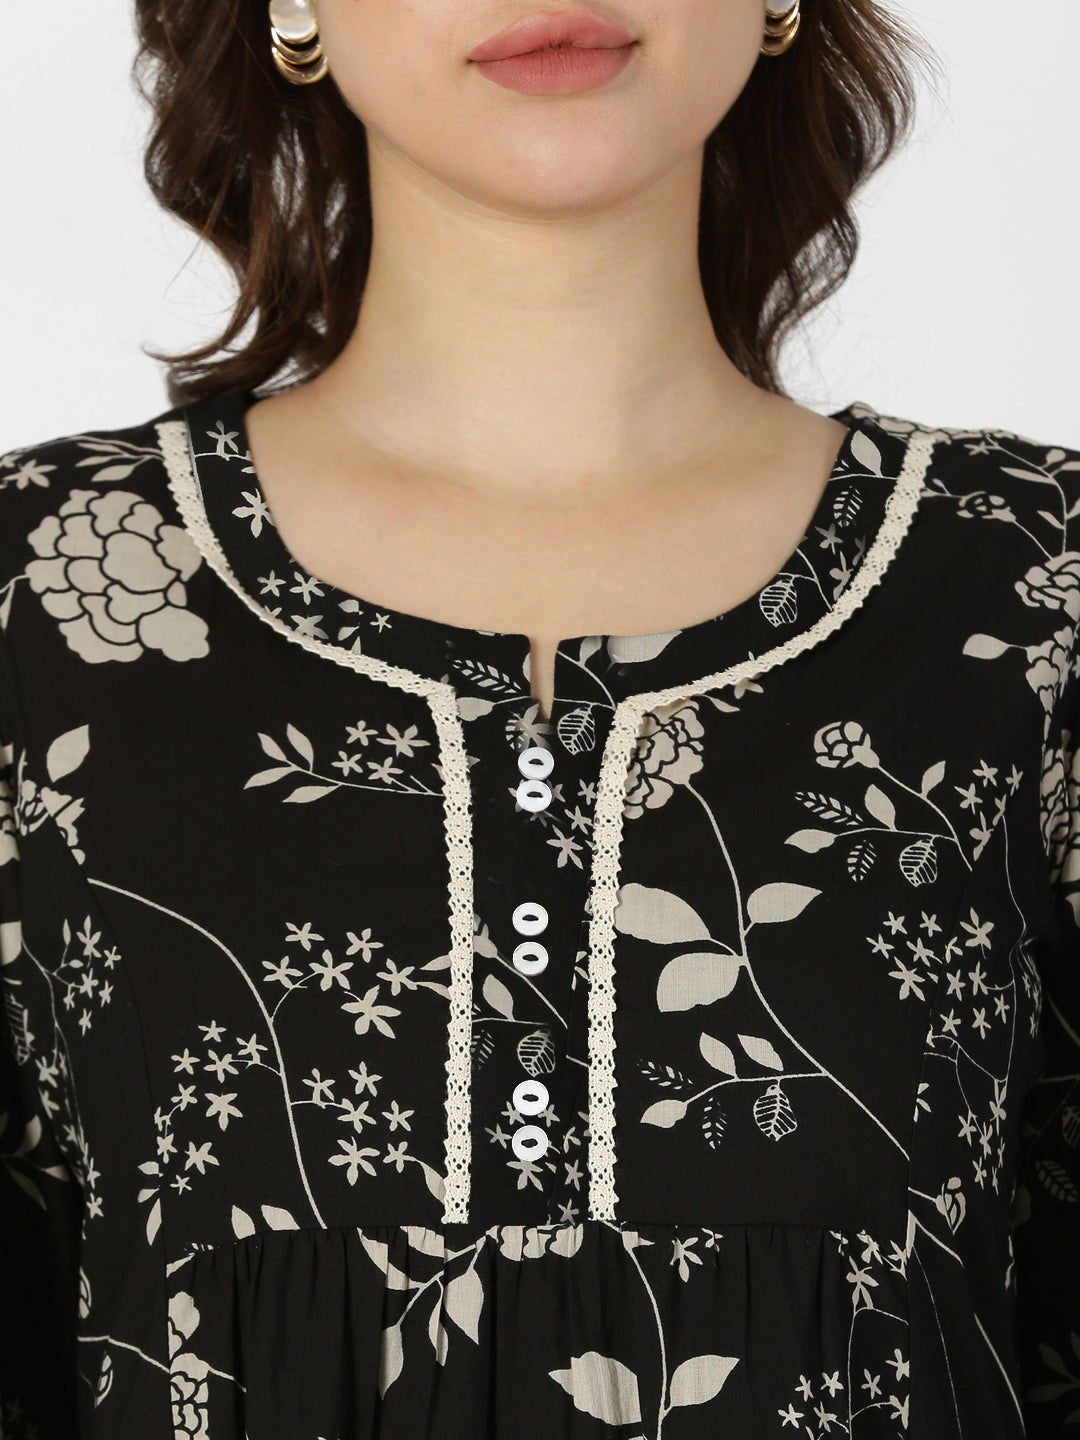 Black Floral Print Midi Dress